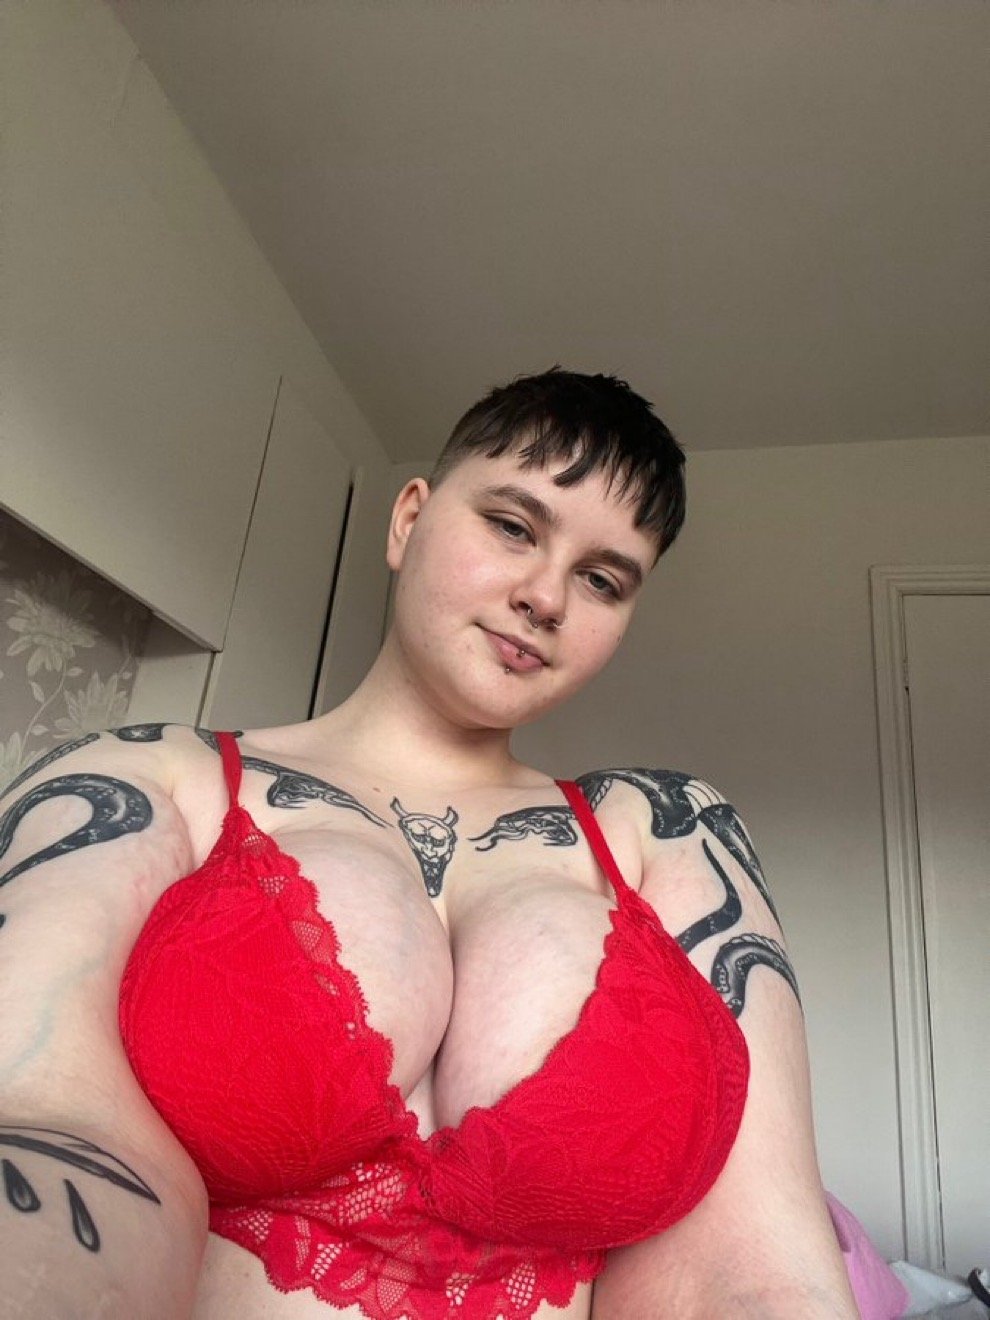 Big boobs Teen - Porn Videos & Photos - EroMe